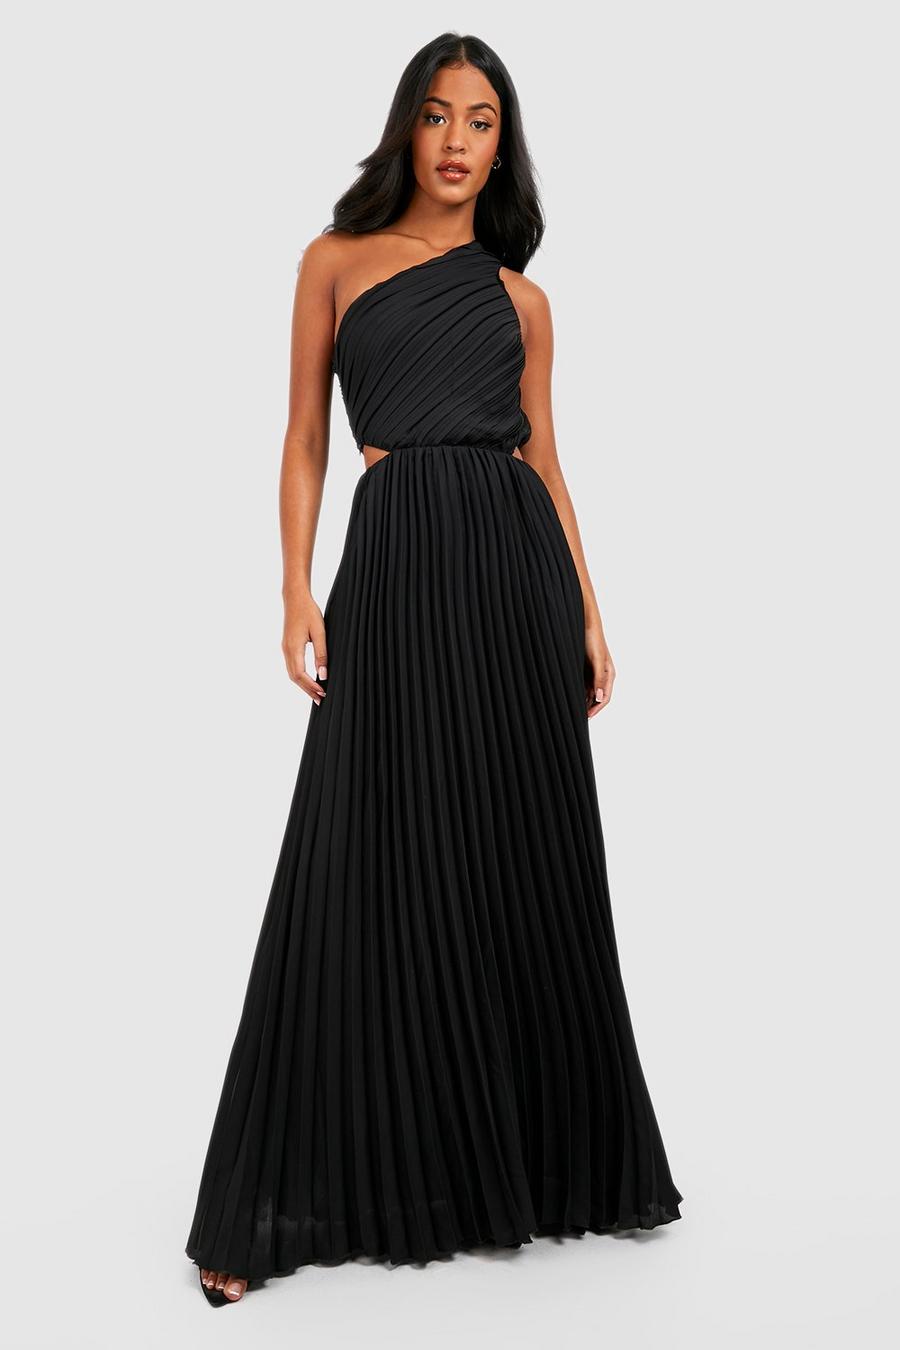 שחור שמלת מקסי One Shoulder עם קפלים, לנשים גבוהות